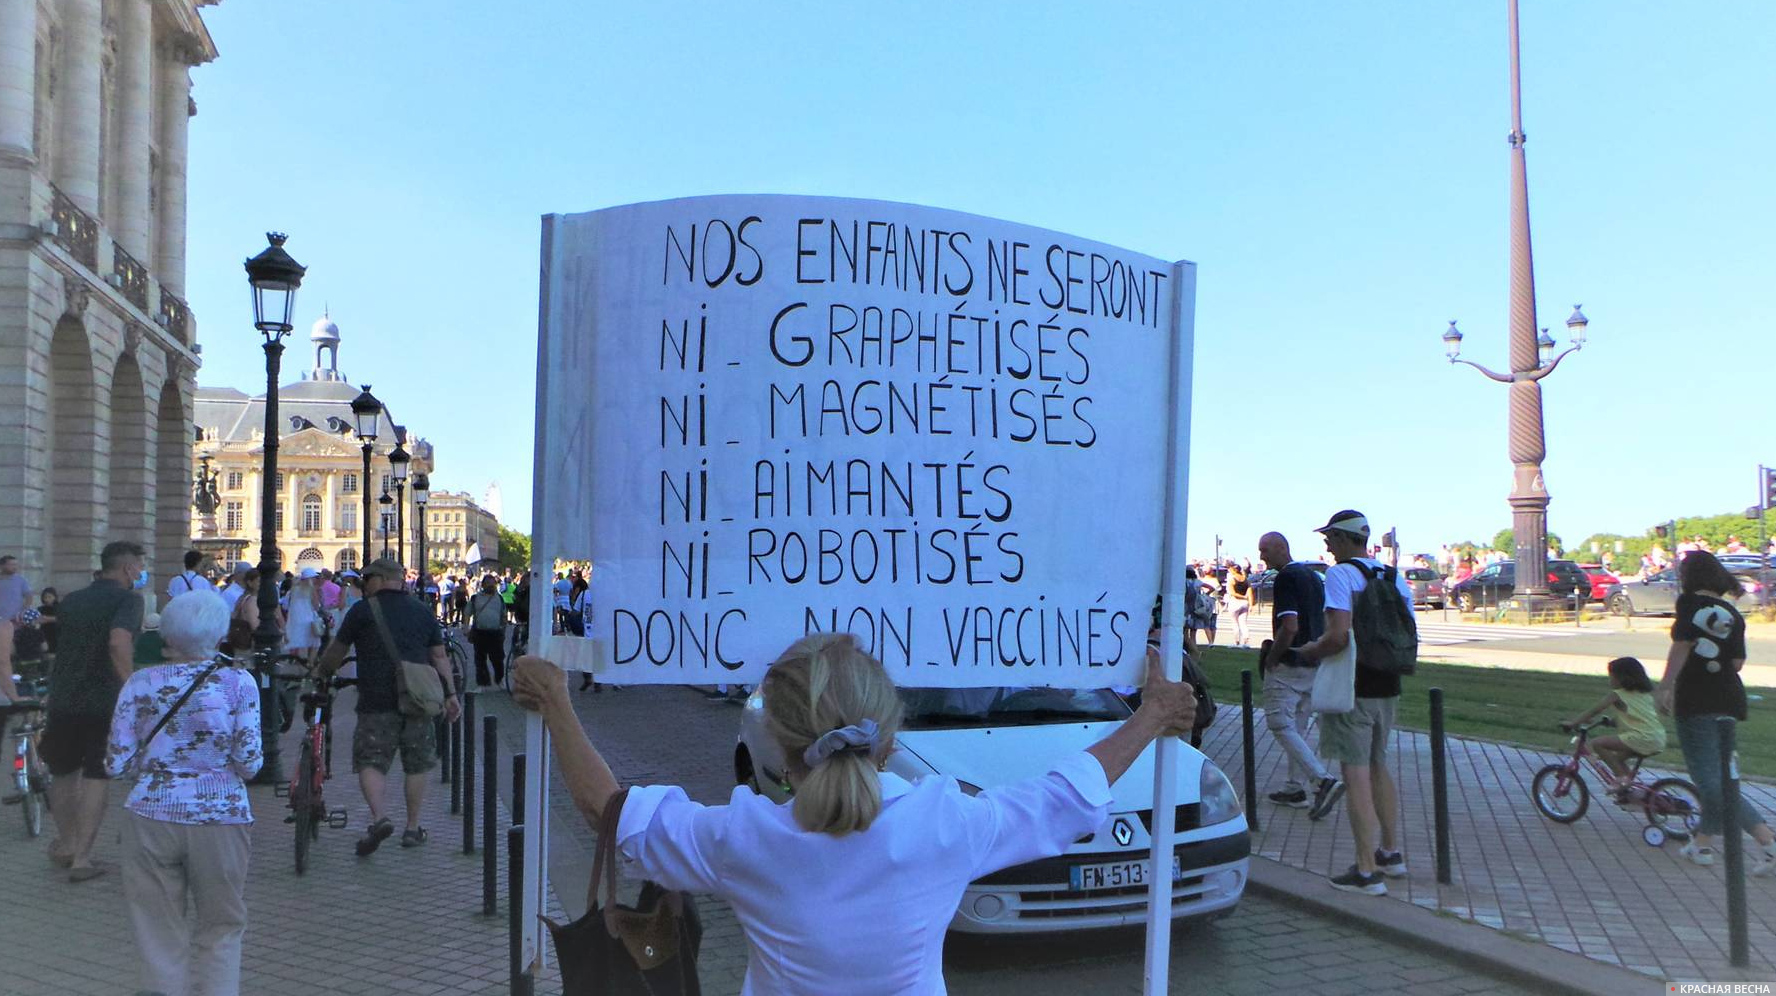 Надпись на плакате: «Наши дети не будут ни «графенизированы», ни «магнетизированы», ни намагничены, ни роботизированы. И, следовательно, ни вакцинированы». Протест против навязываемой вакцинации и санпаспортов  Франция, август 2021